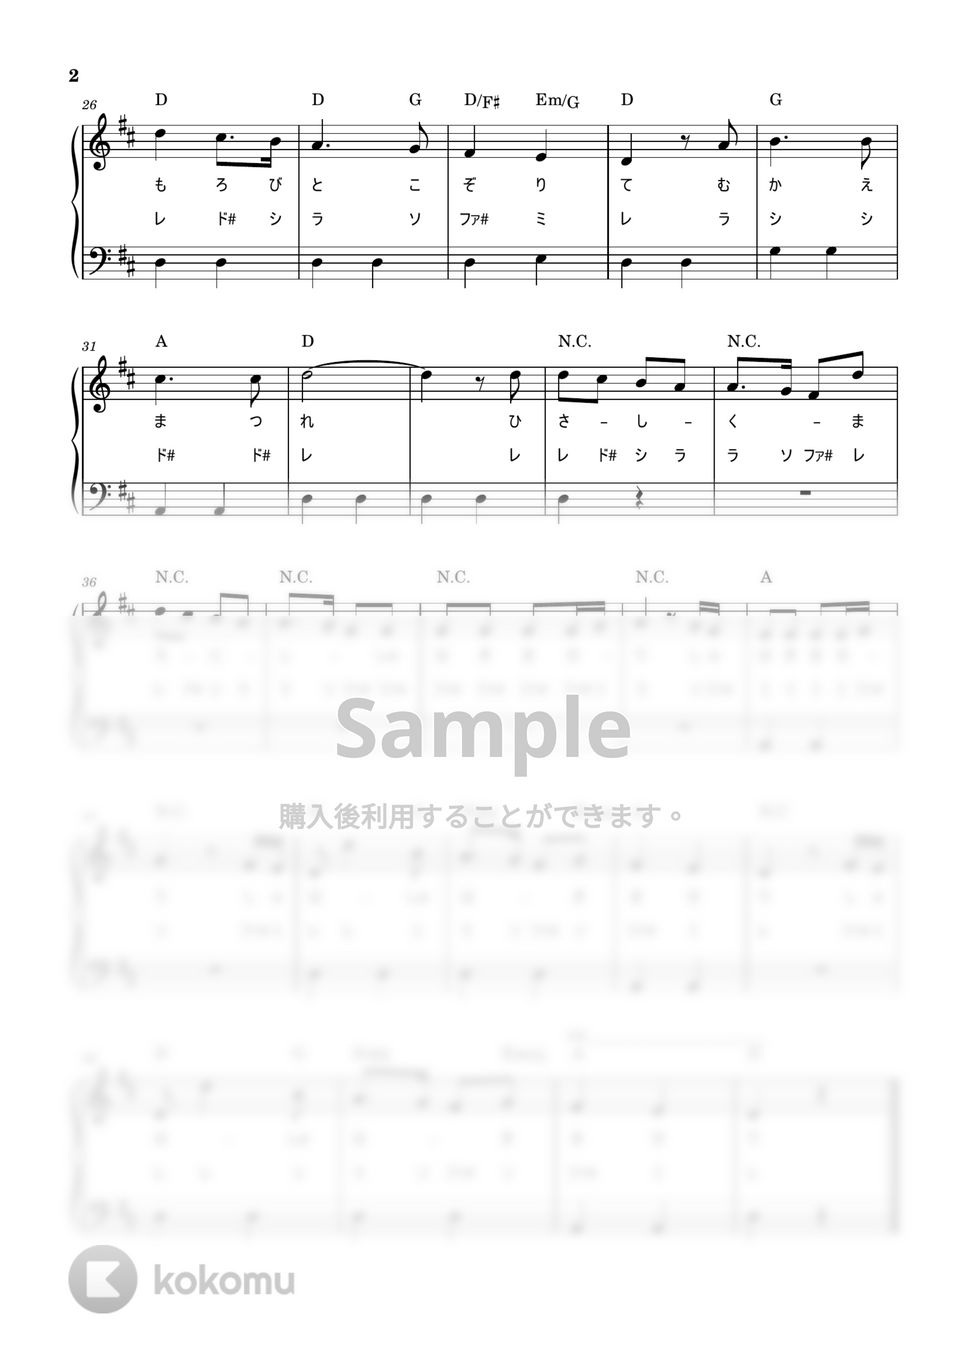 もろびとこぞりて (かんたん / 歌詞付き / ドレミ付き / 初心者) by piano.tokyo